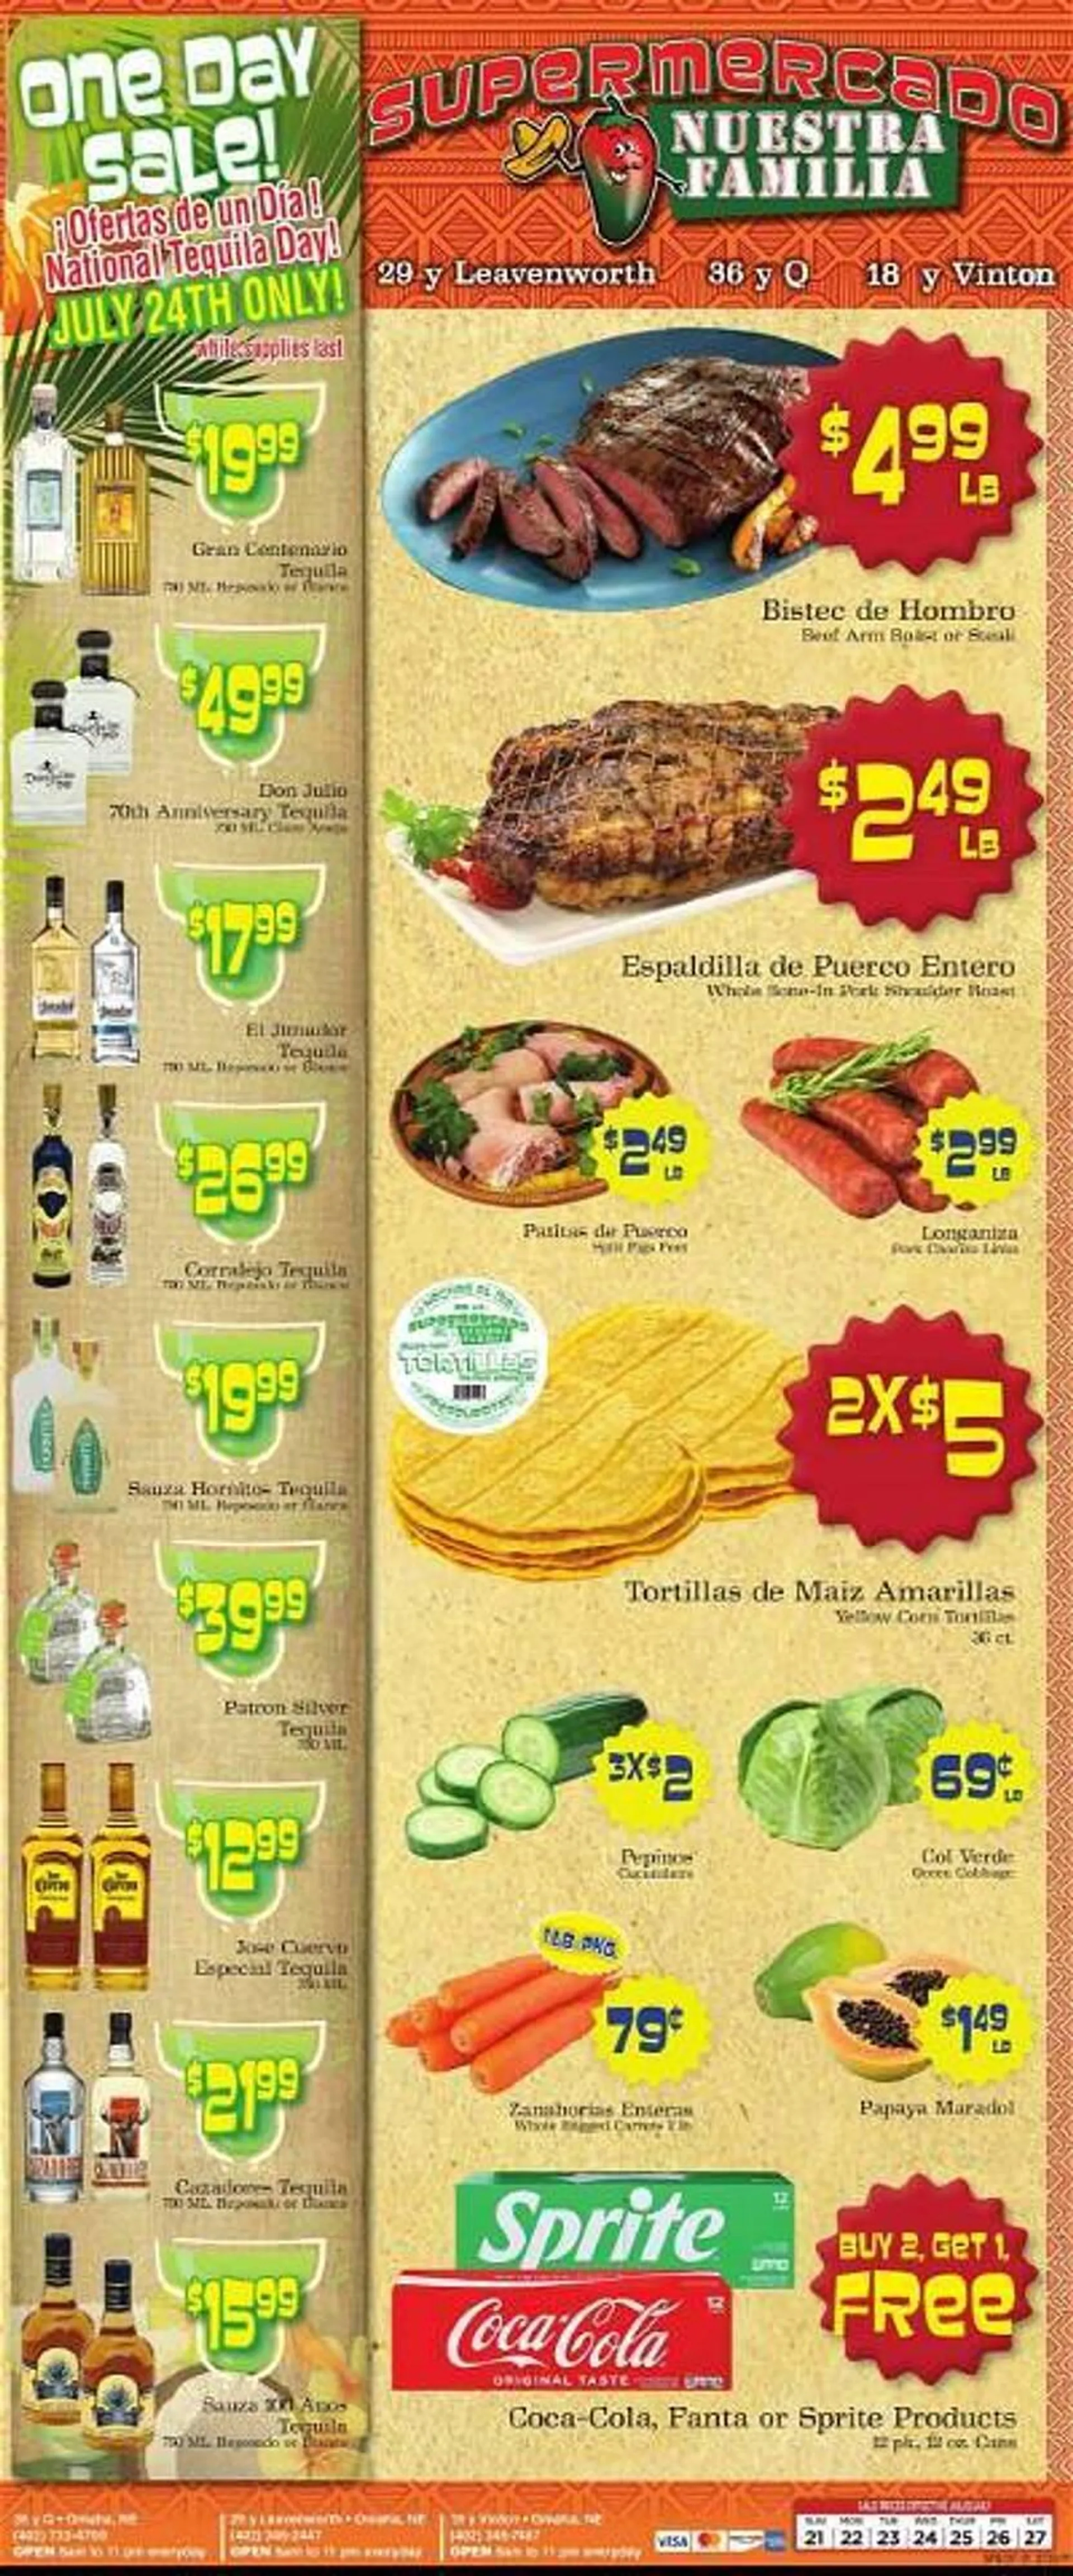 Supermercado Nuestra Familia Weekly Ad - 1